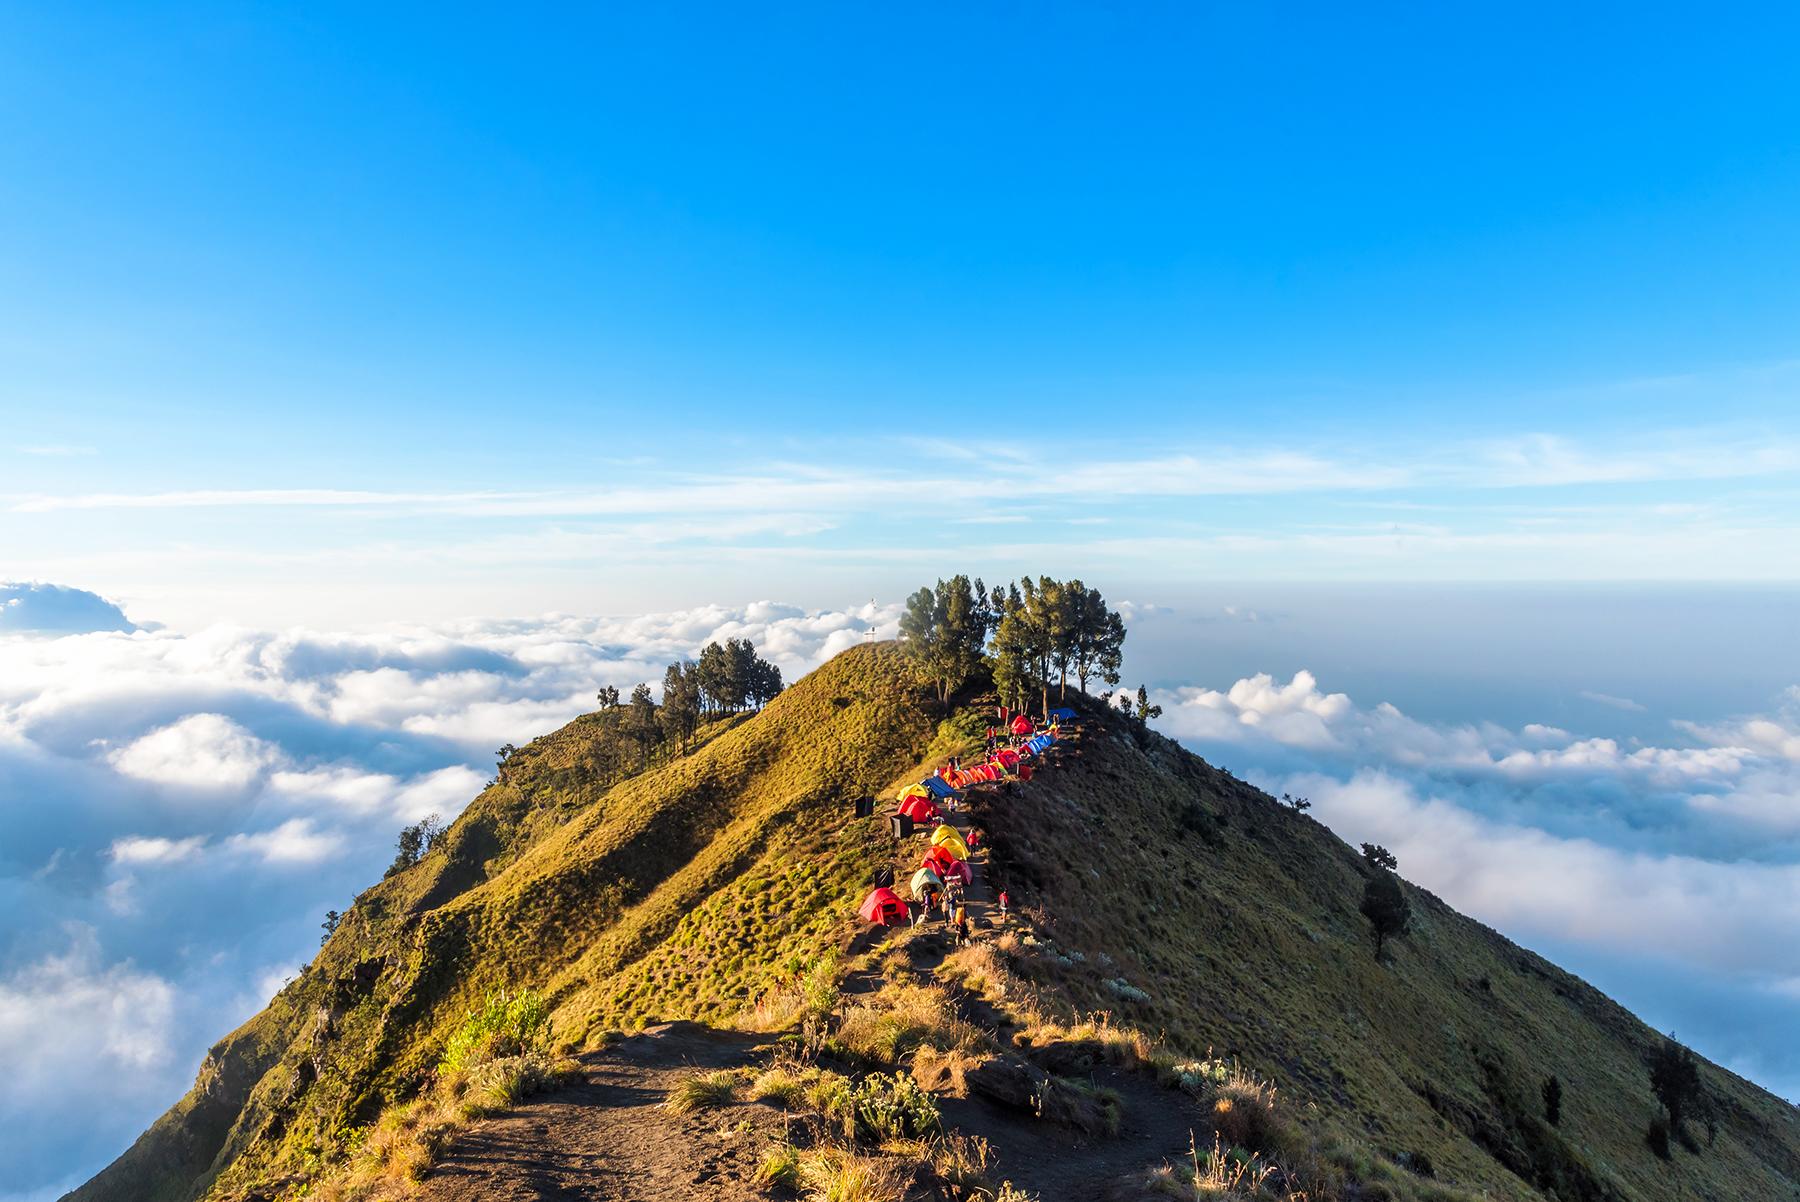 Núi Rinjani, Indonesia  4/4 _ _ Chuyến đi bộ này không dành cho những người yếu tim. Ngọn núi lửa đang hoạt động cao thứ hai ở Indonesia có độ cao khổng lồ 3.726m, có thể chinh phục trong ba ngày xen kẽ giữa những dặm dễ dàng trên địa hình bằng phẳng và những khe núi dốc trên đất giàu núi lửa, cũng như đá rời. Như mọi khi, thể lực là điều bắt buộc - đối với chuyến đi bộ này, kinh nghiệm kỹ thuật cũng sẽ là một lợi ích để ngăn chặn bất kỳ sự cố tràn nào khó chịu cho những người chưa quen. Hoàn thành chuyến đi đầy gian khổ và được thưởng bằng các điểm tham quan và mùi vị độc đáo (ahem, mùi lưu huỳnh luôn tồn tại) - chẳng hạn như tầm nhìn chỉ huy về một miệng núi lửa đầy nước tuyệt đẹp.